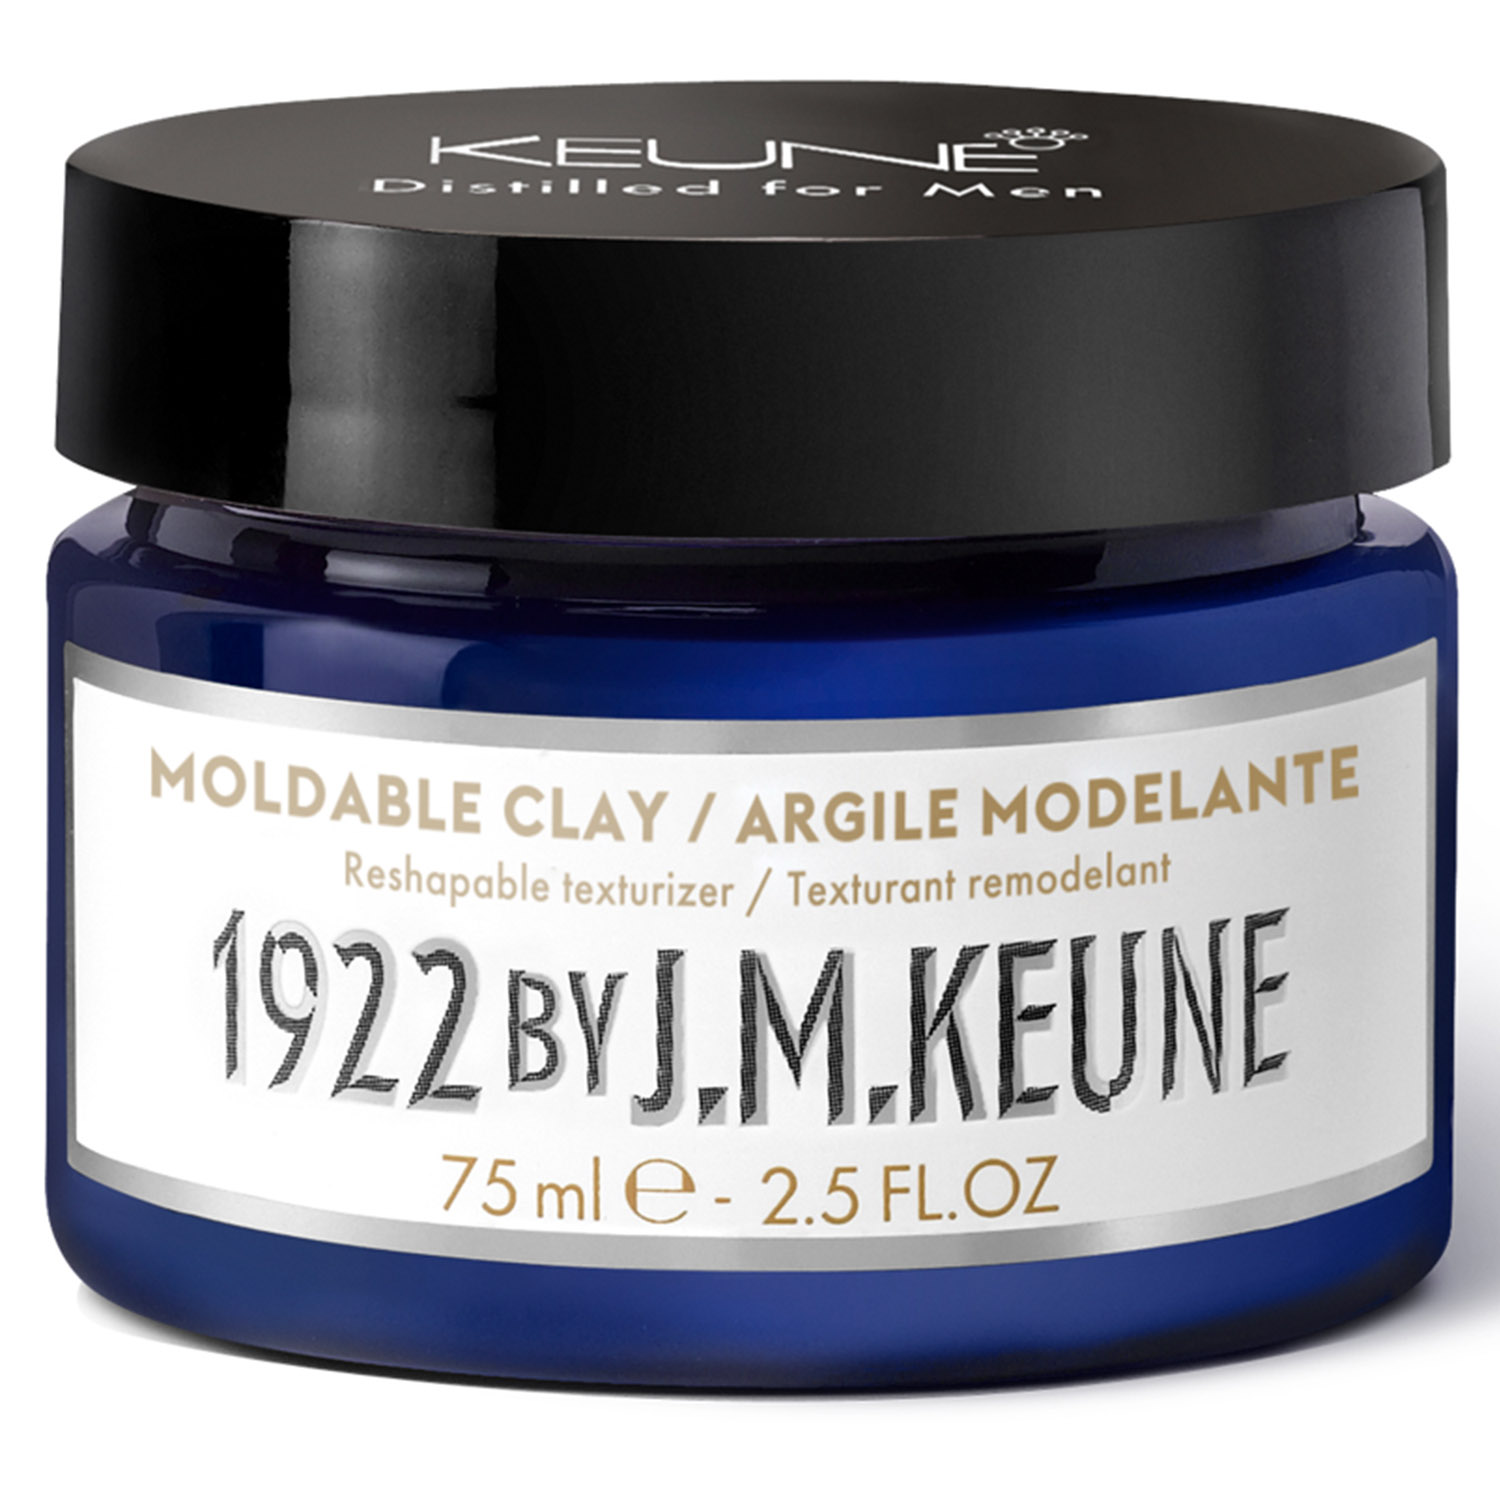 Keune Моделирующая глина для укладки волос Moldable Clay, 75 мл (Keune, 1922 by J.M. Keune) 1922 by j m keune purifying shampoo 250 мл